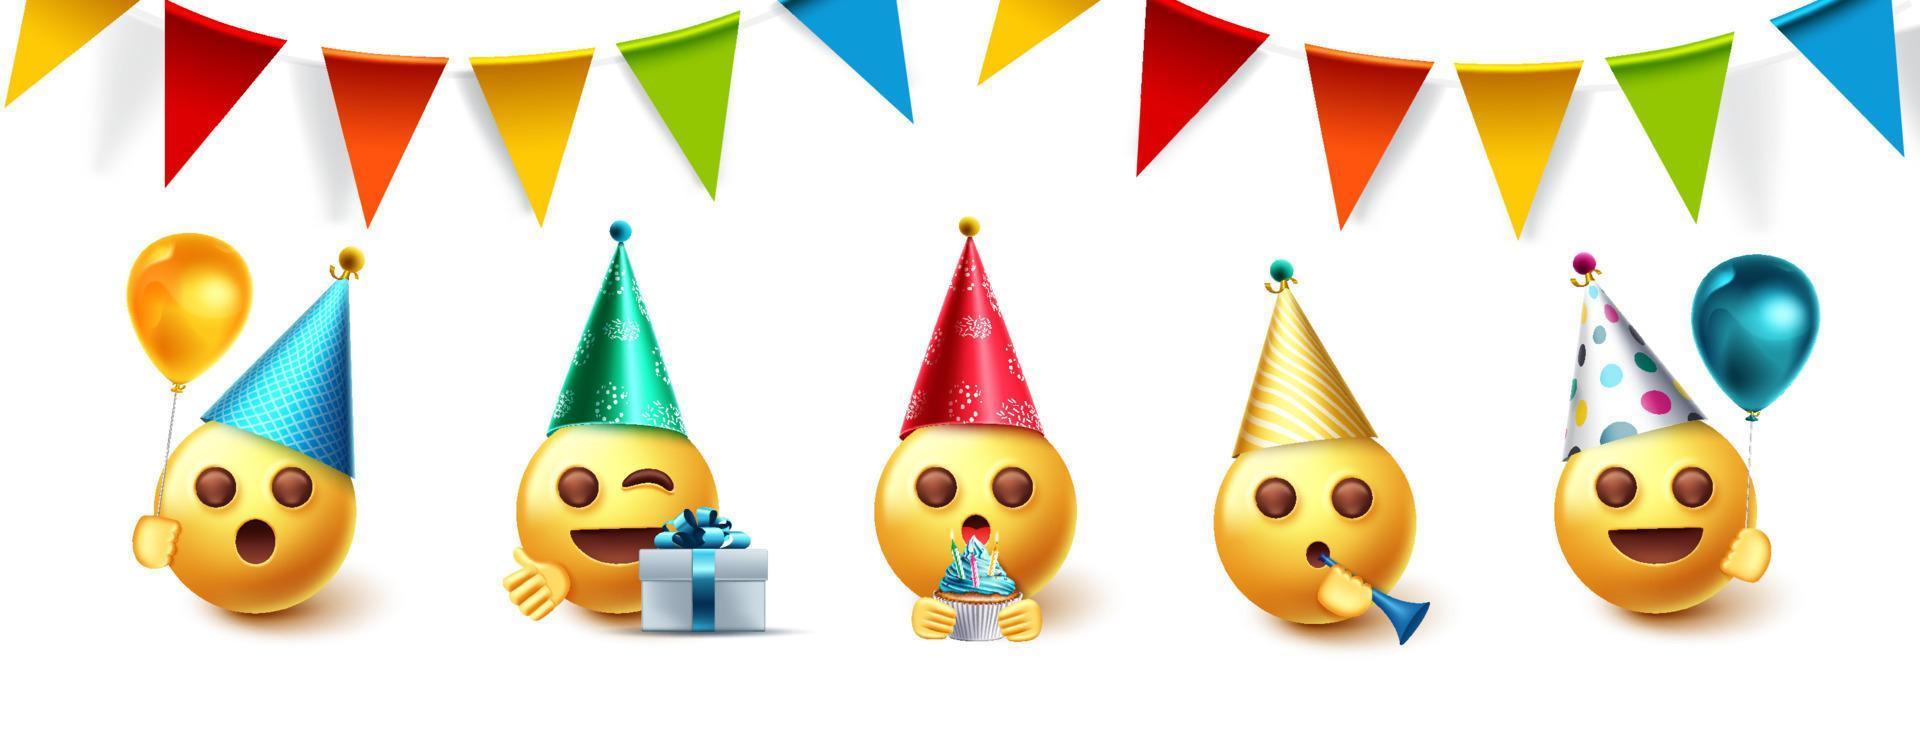 emoji verjaardagsfeestje vector ontwerpset. emojis-collectie in feestviering met wimpels, ballonnen en hoeden die elementen vieren voor de emoticon-collectie van de geboortedag. vectorillustratie.